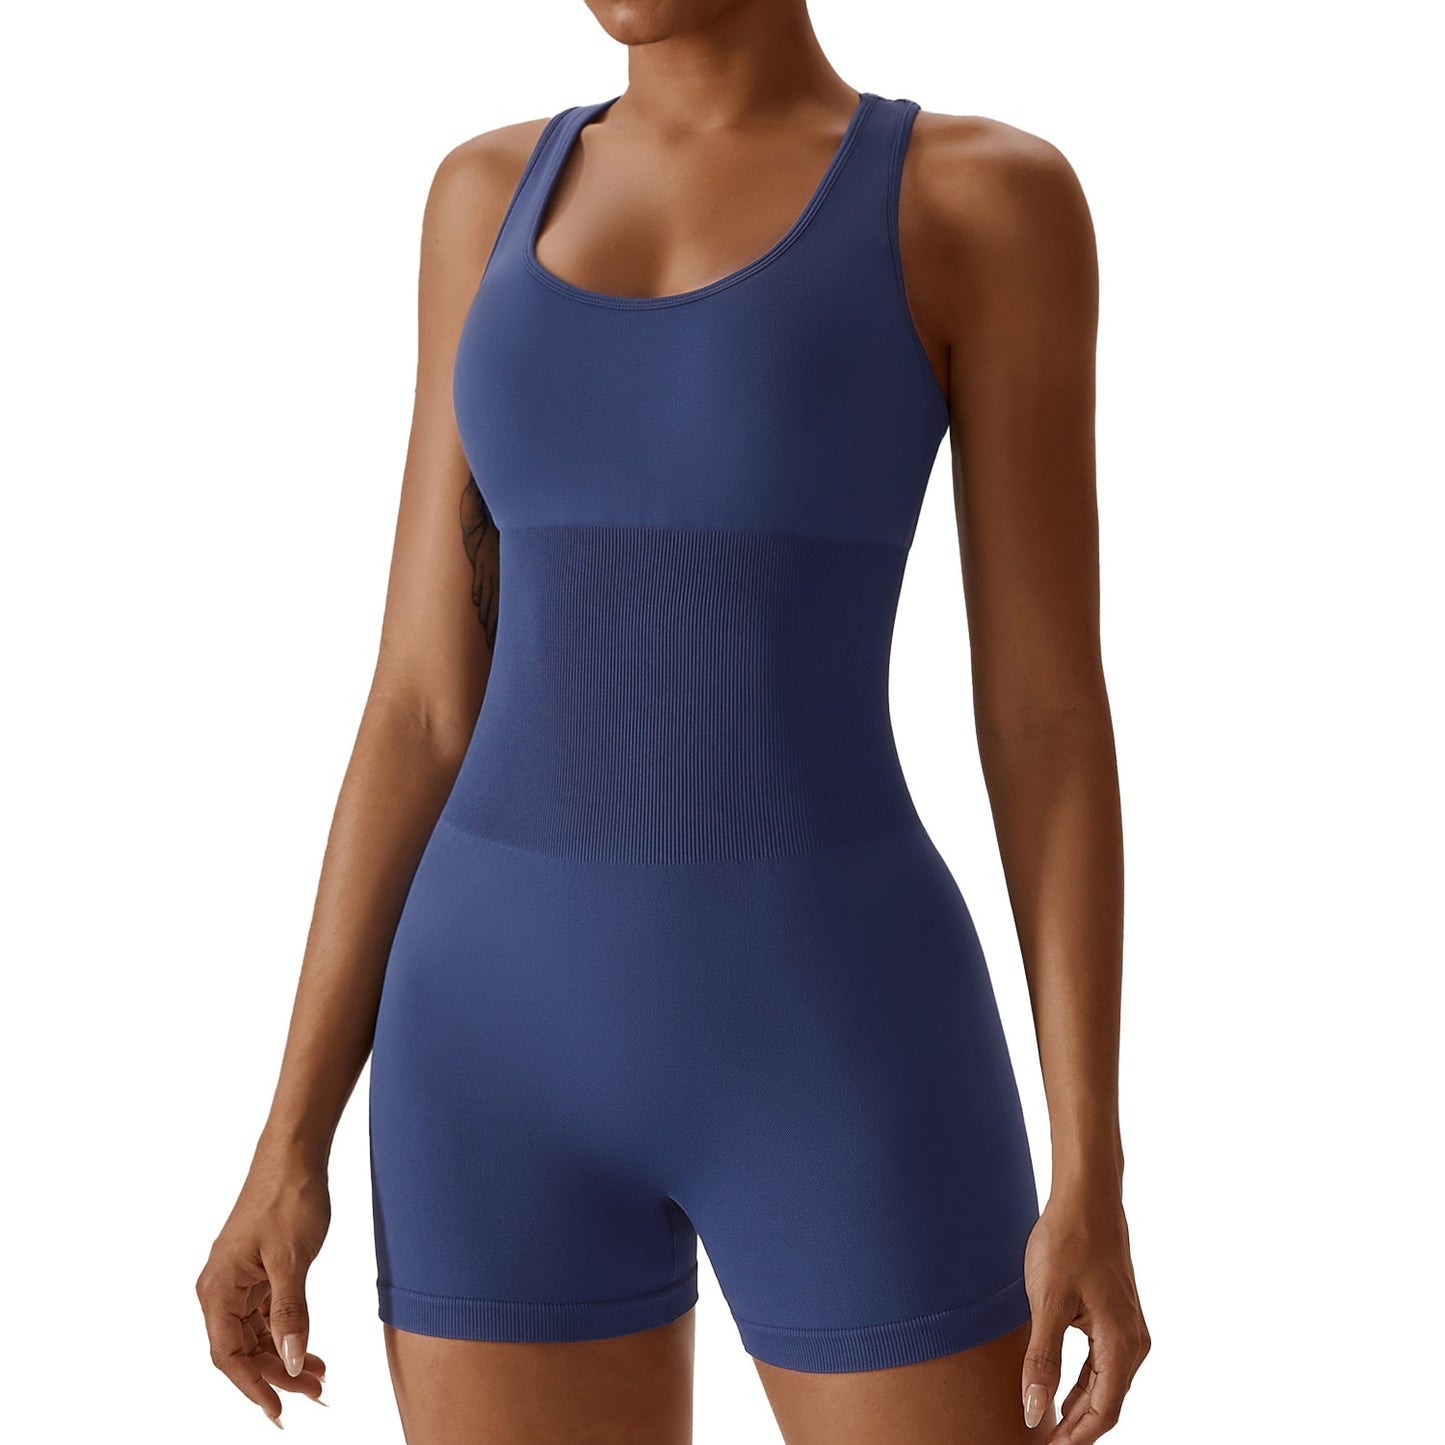 Yoga Jumpsuit One-Piece Seamless Sports Jumpsuit Set Woman Gym Short Sets Fitness Suit Workout Clothes for Women Bodysuit - Bonnie Lassio